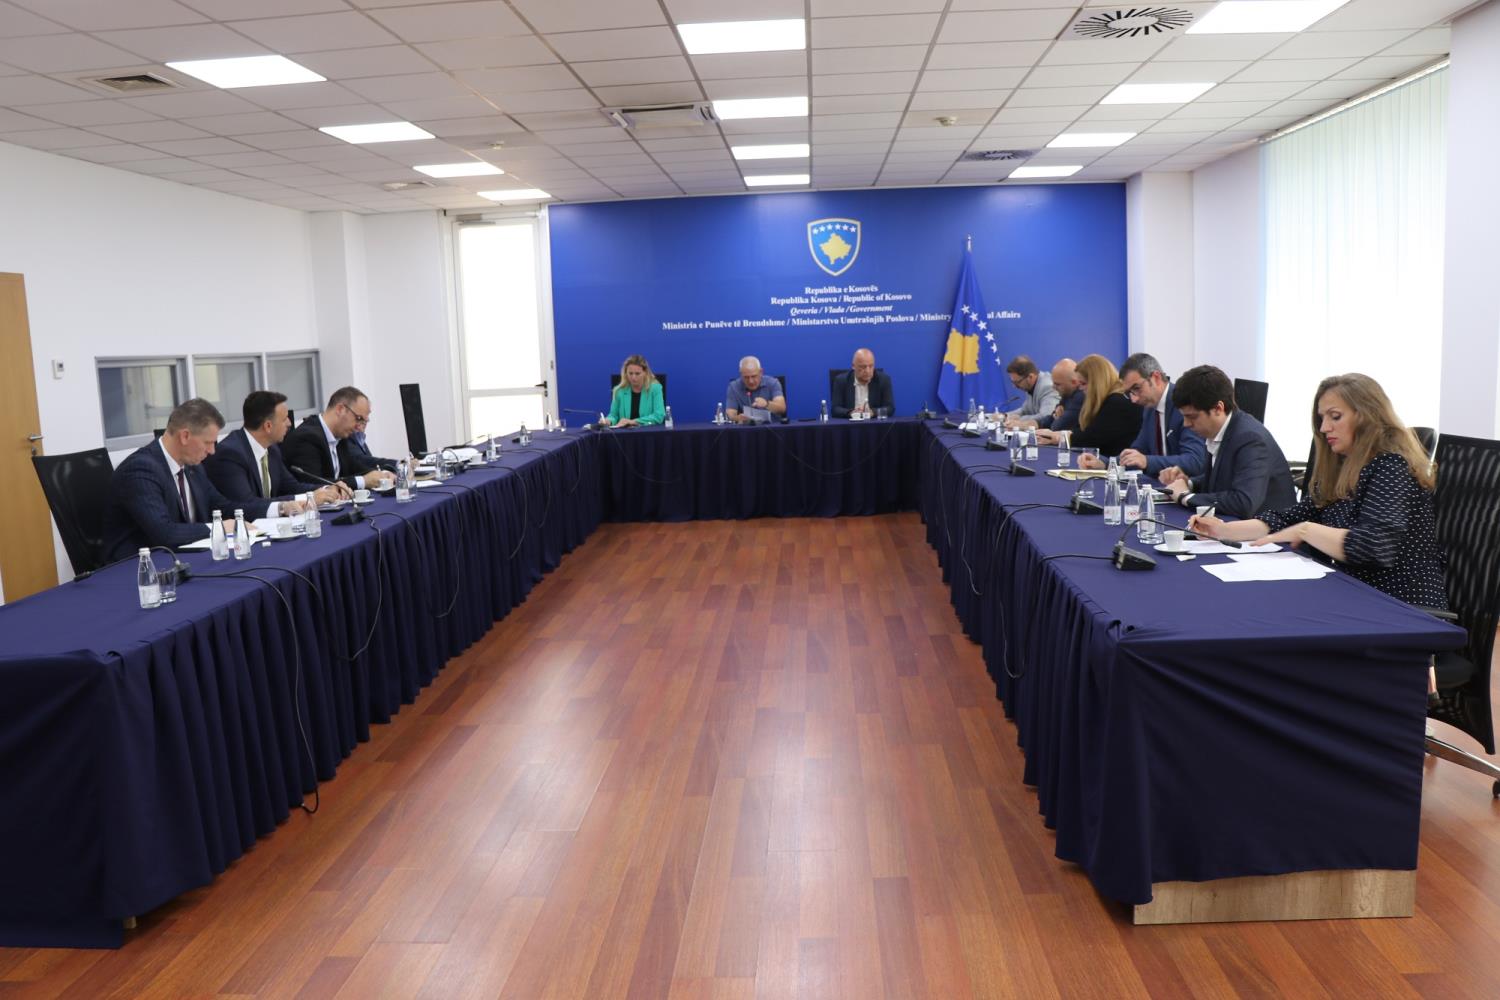 Ministar Sveçla se sastao sa predstavnicima institucija Republike Kosovo koje izveštavaju o sprovođenju aktivnosti a koje proizilaze iz zajedničkog plana protiv terorizma